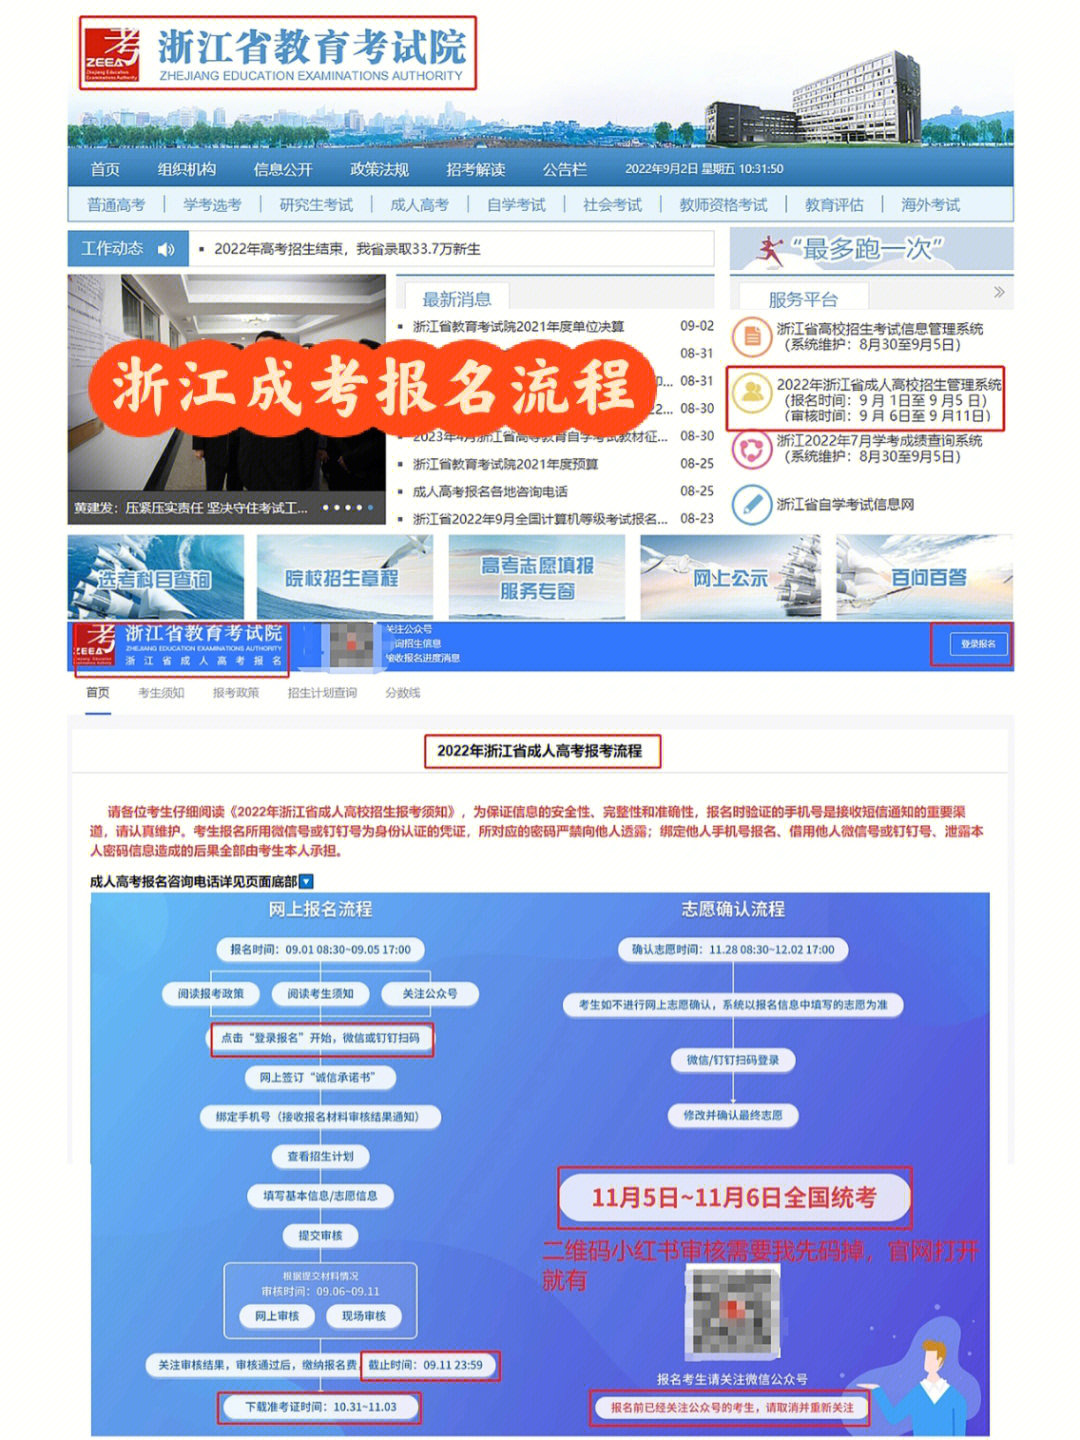 [二r]报名采取线上报名,报名网站:浙江省教育考试院官网